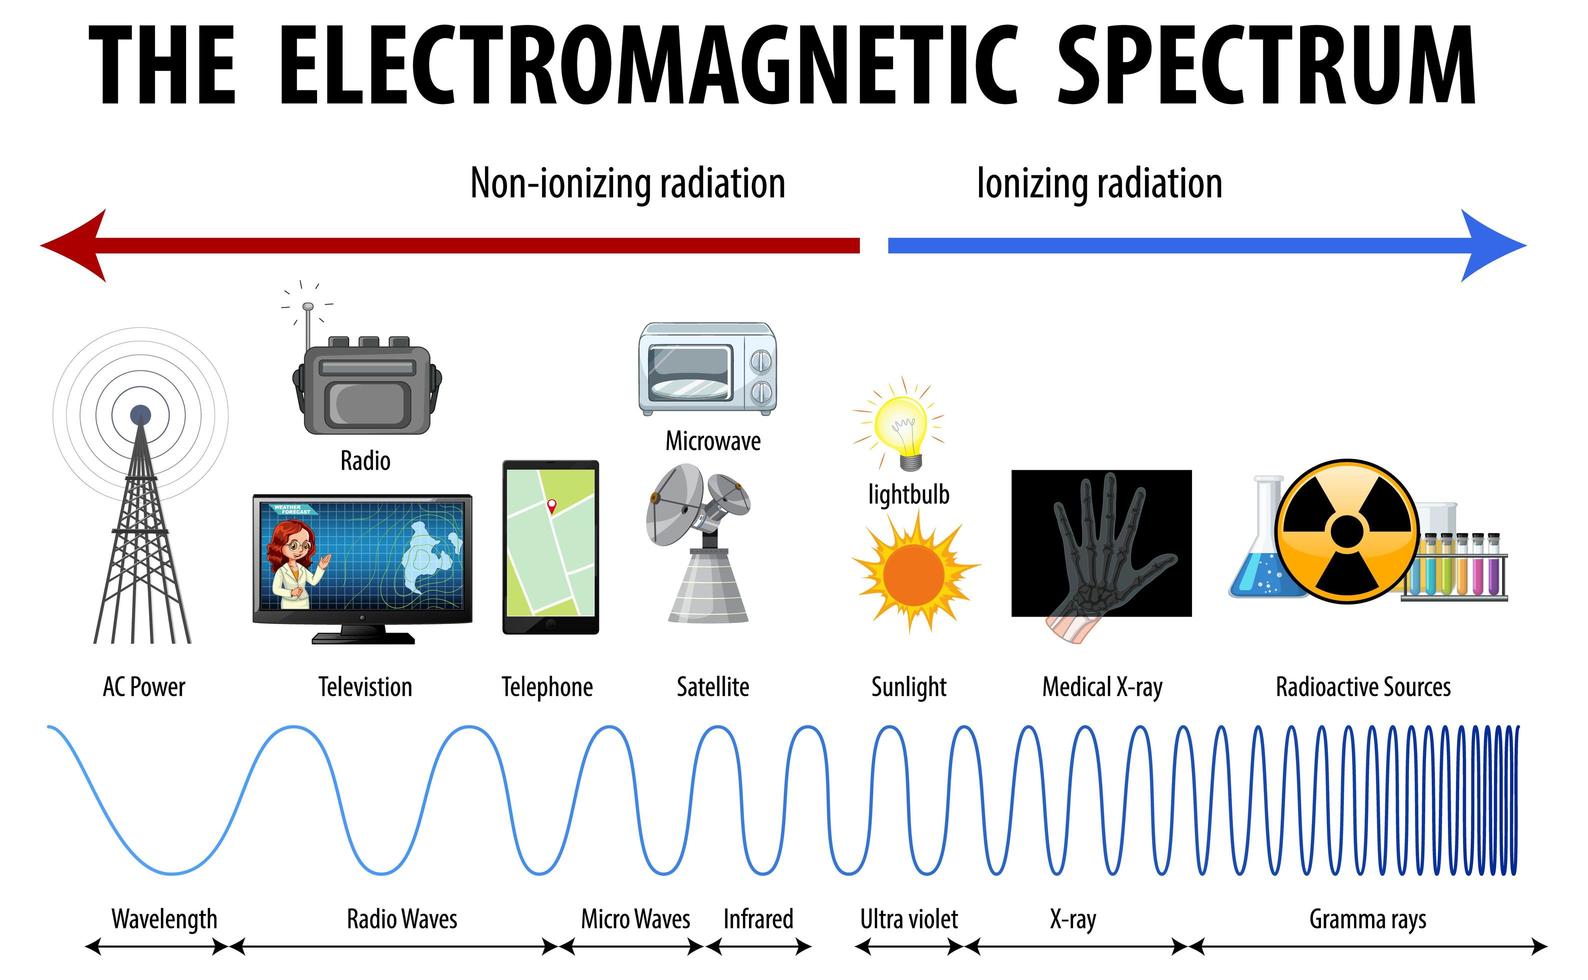 diagrama de espectro electromagnético de ciencia vector